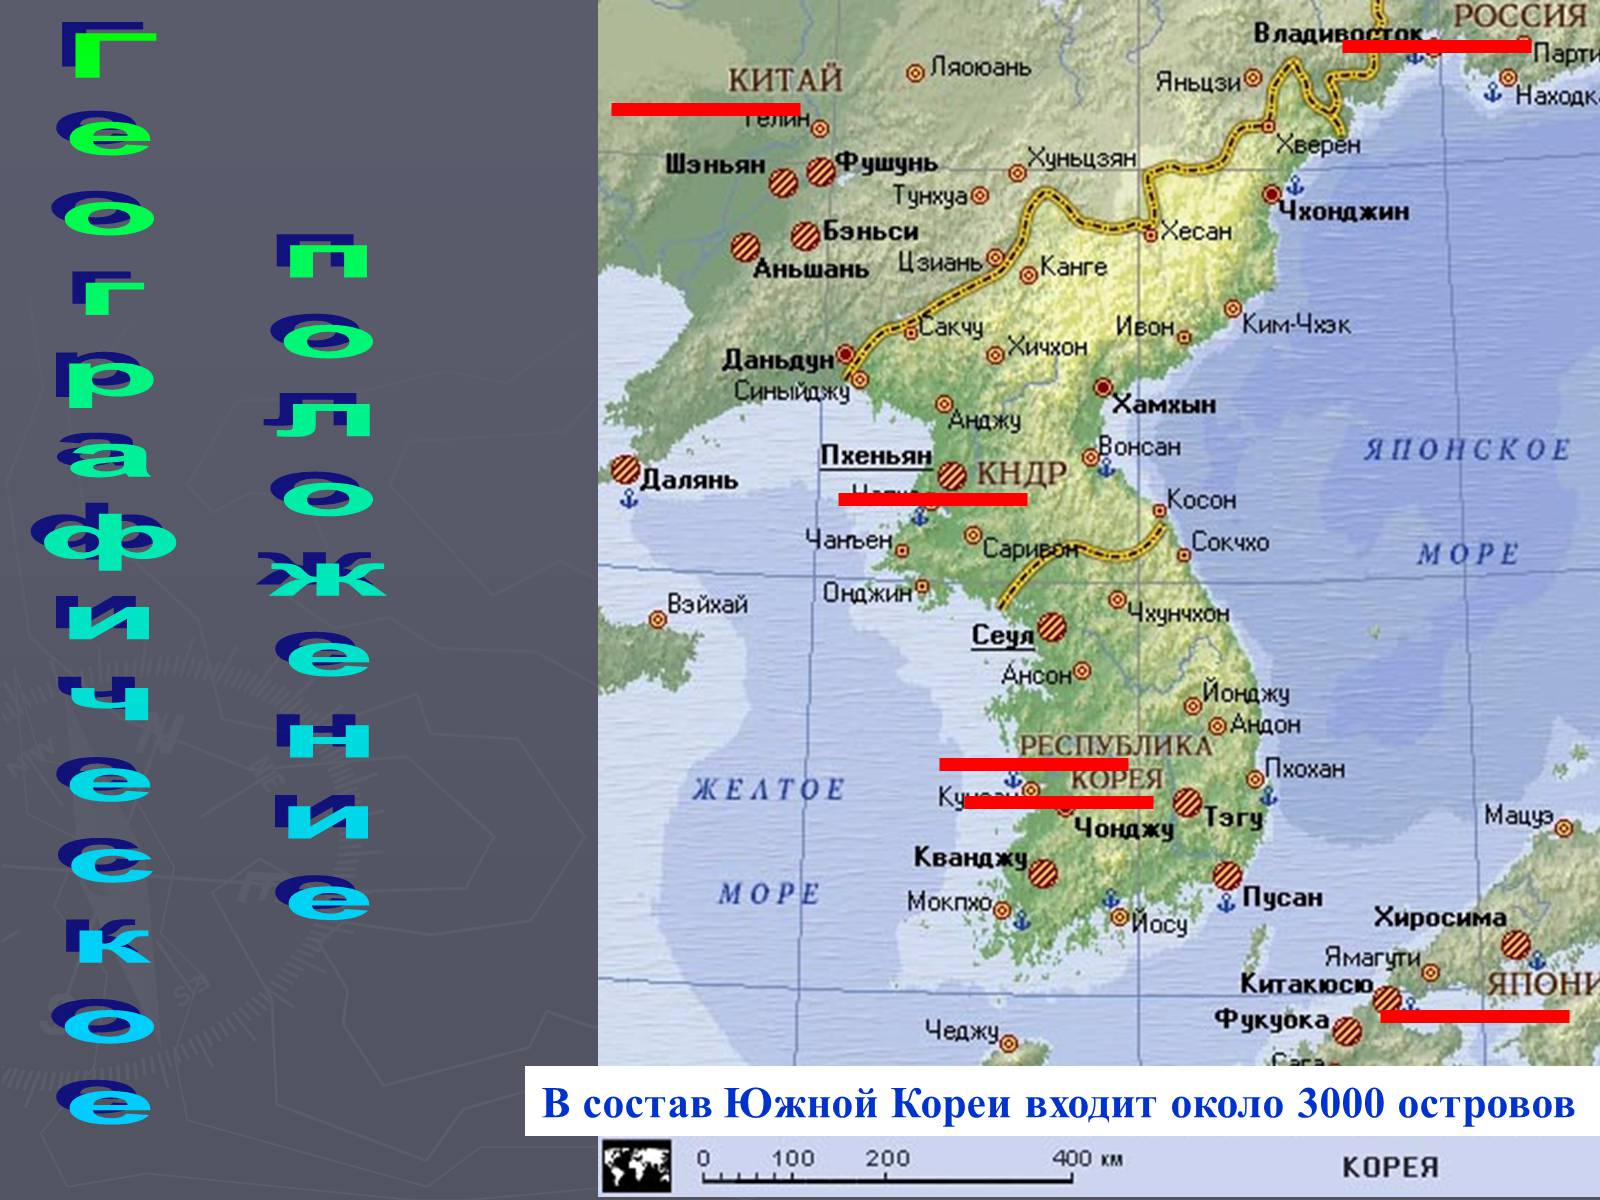 Южная корея географическое положение